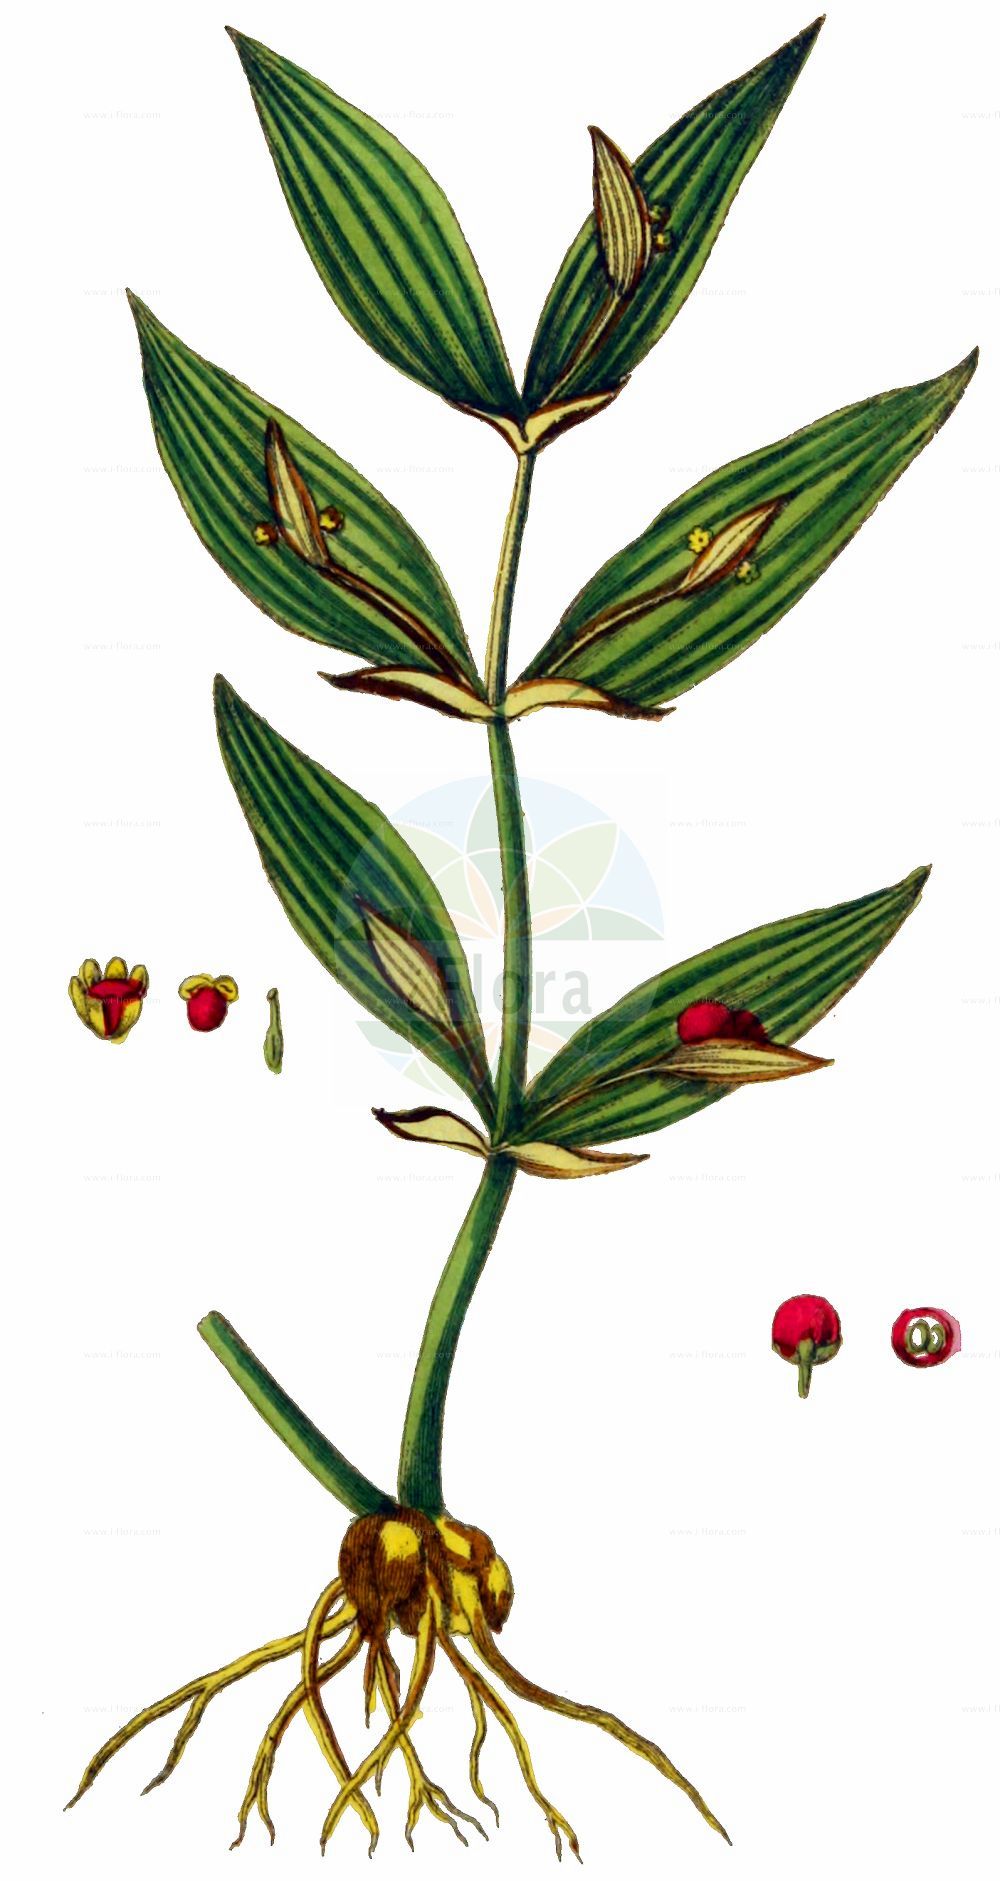 Historische Abbildung von Ruscus hypoglossum (Spineless Butcher's-broom). Das Bild zeigt Blatt, Bluete, Frucht und Same. ---- Historical Drawing of Ruscus hypoglossum (Spineless Butcher's-broom). The image is showing leaf, flower, fruit and seed.(Ruscus hypoglossum,Spineless Butcher's-broom,Platyruscus hypoglossum,Ruscus alexandrinus,Ruscus humilis,Ruscus hypoglossum,Ruscus troadensis,Ruscus,Asparagaceae,Spargelgewächse,Asparagus family,Blatt,Bluete,Frucht,Same,leaf,flower,fruit,seed,Oskamp et al. (1796-1800))